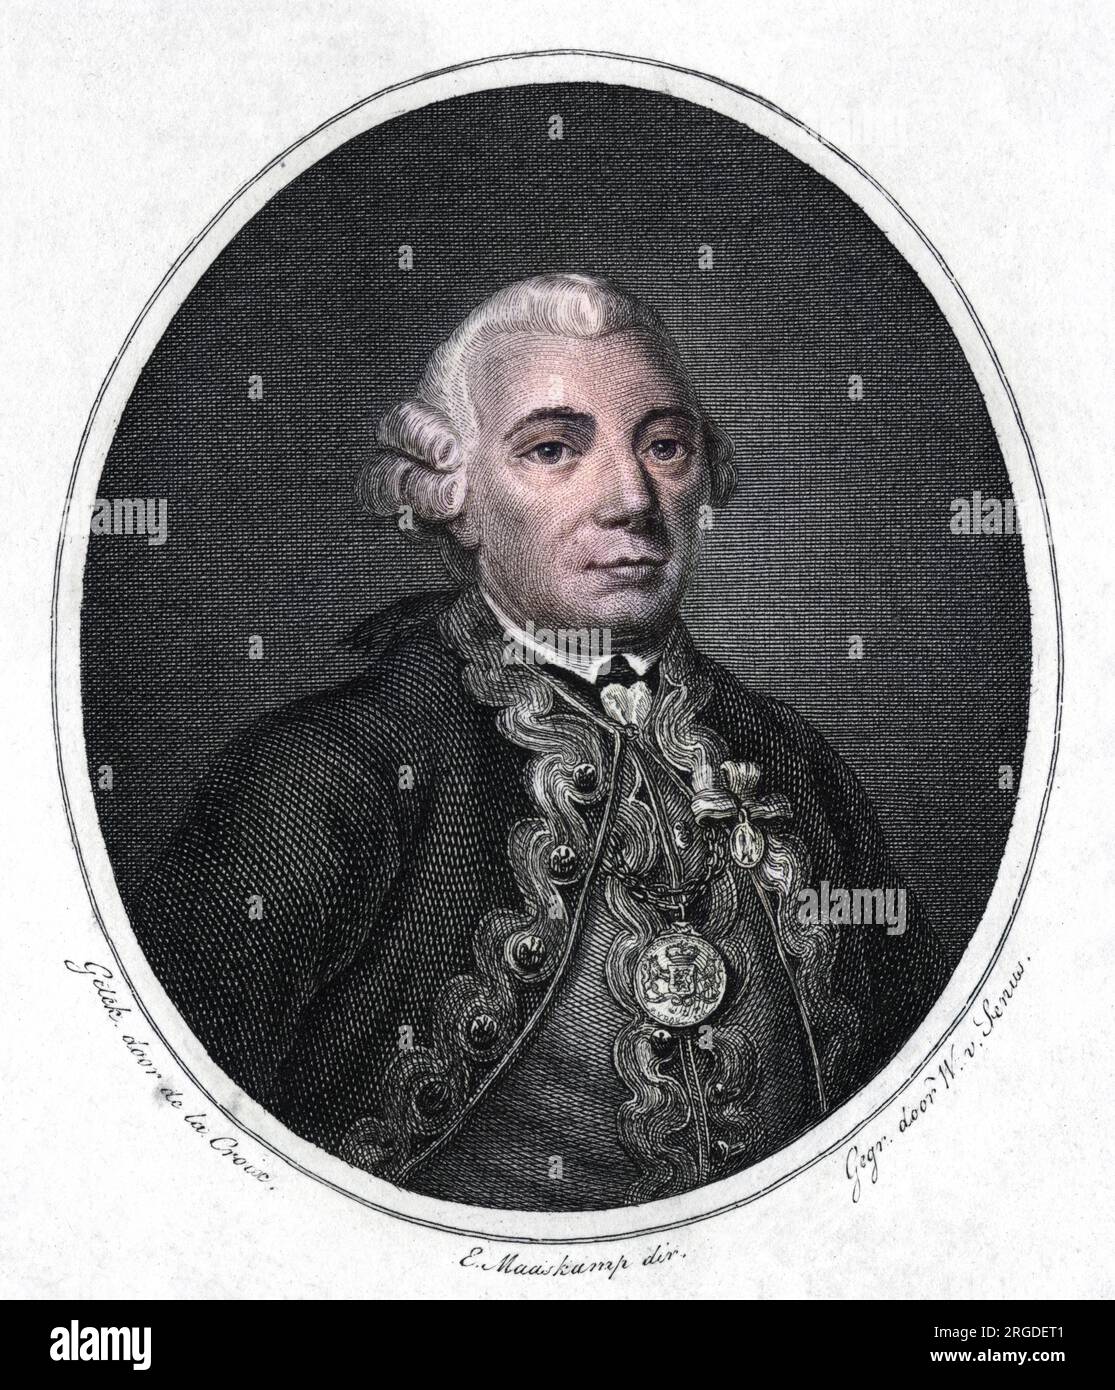 JOHAN ARNOLD ZOUTMAN commandant naval néerlandais Banque D'Images